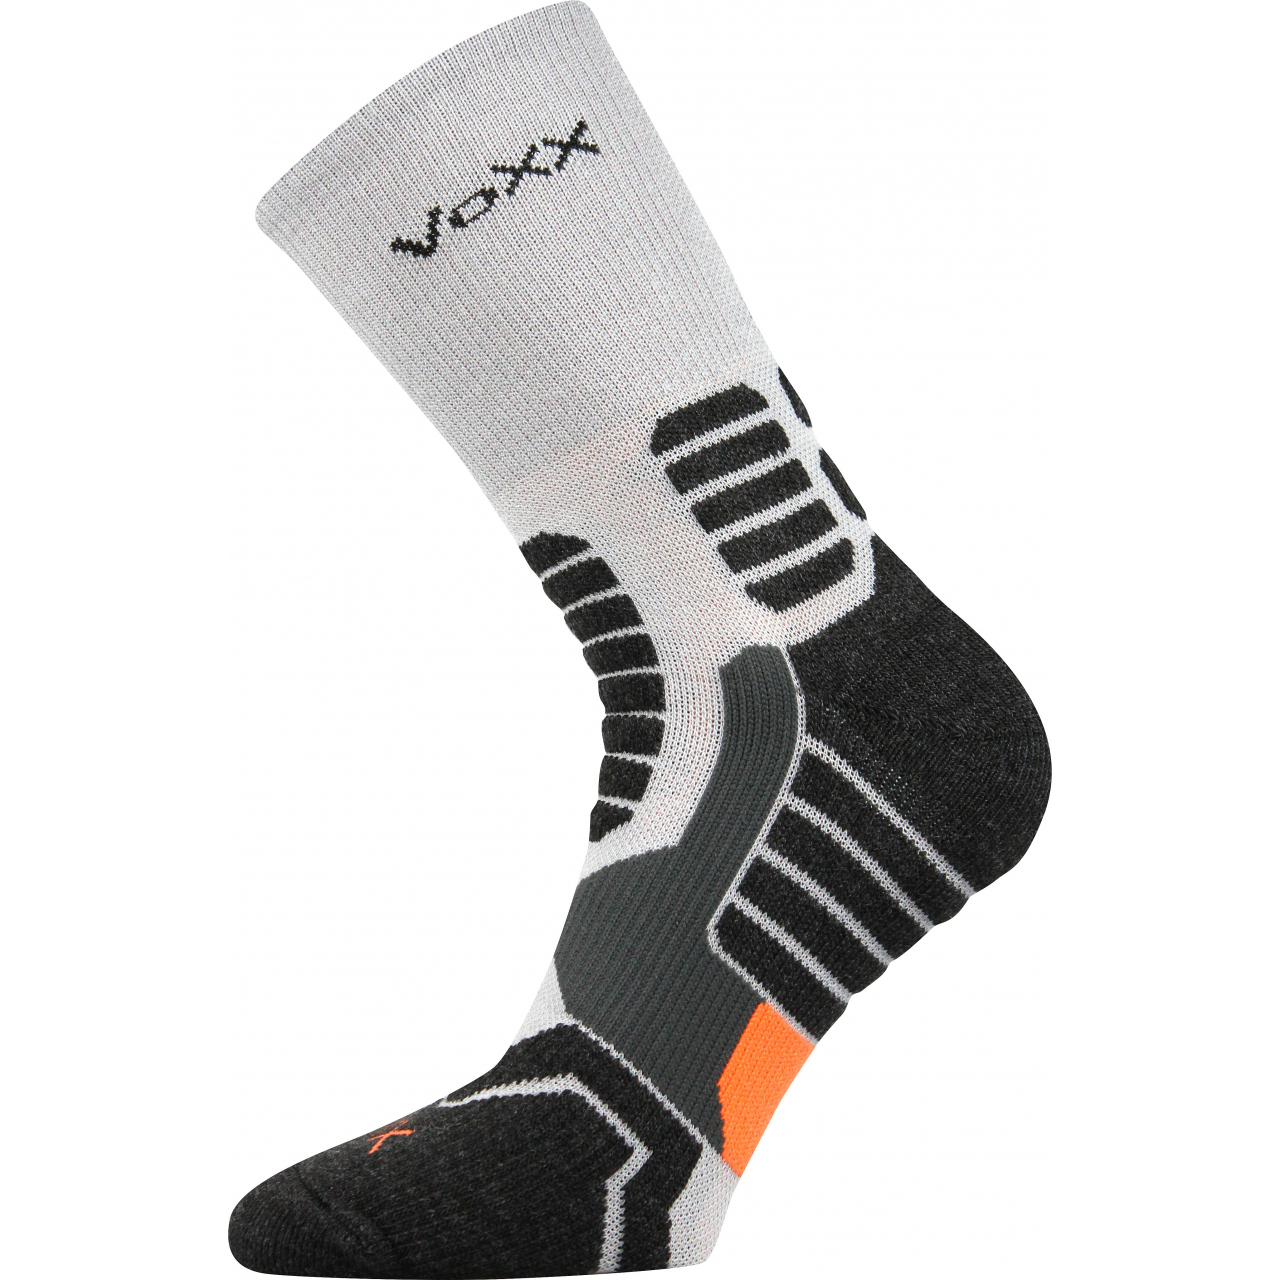 Ponožky kompresní unisex Voxx Ronin - světle šedé-černé, 35-38